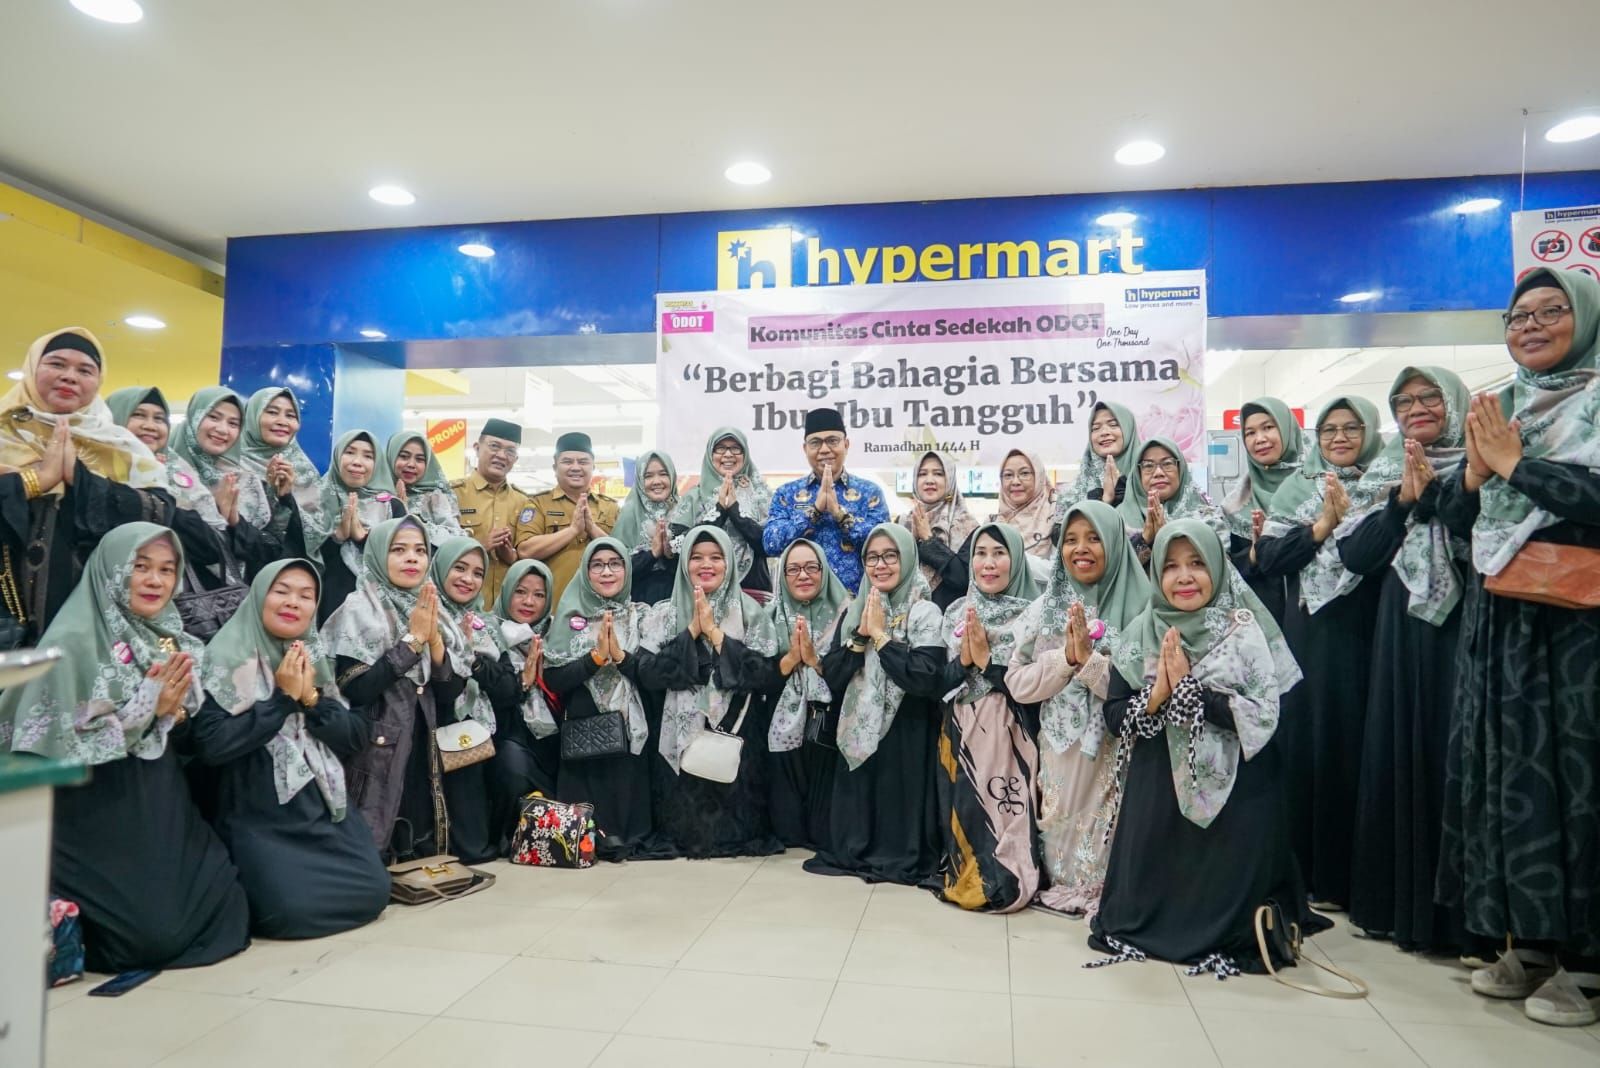 Komunitas Cinta Sedekah ODOT Bengkulu Bagikan 221 Voucher Belanja untuk Perempuan Tangguh di Bengkulu